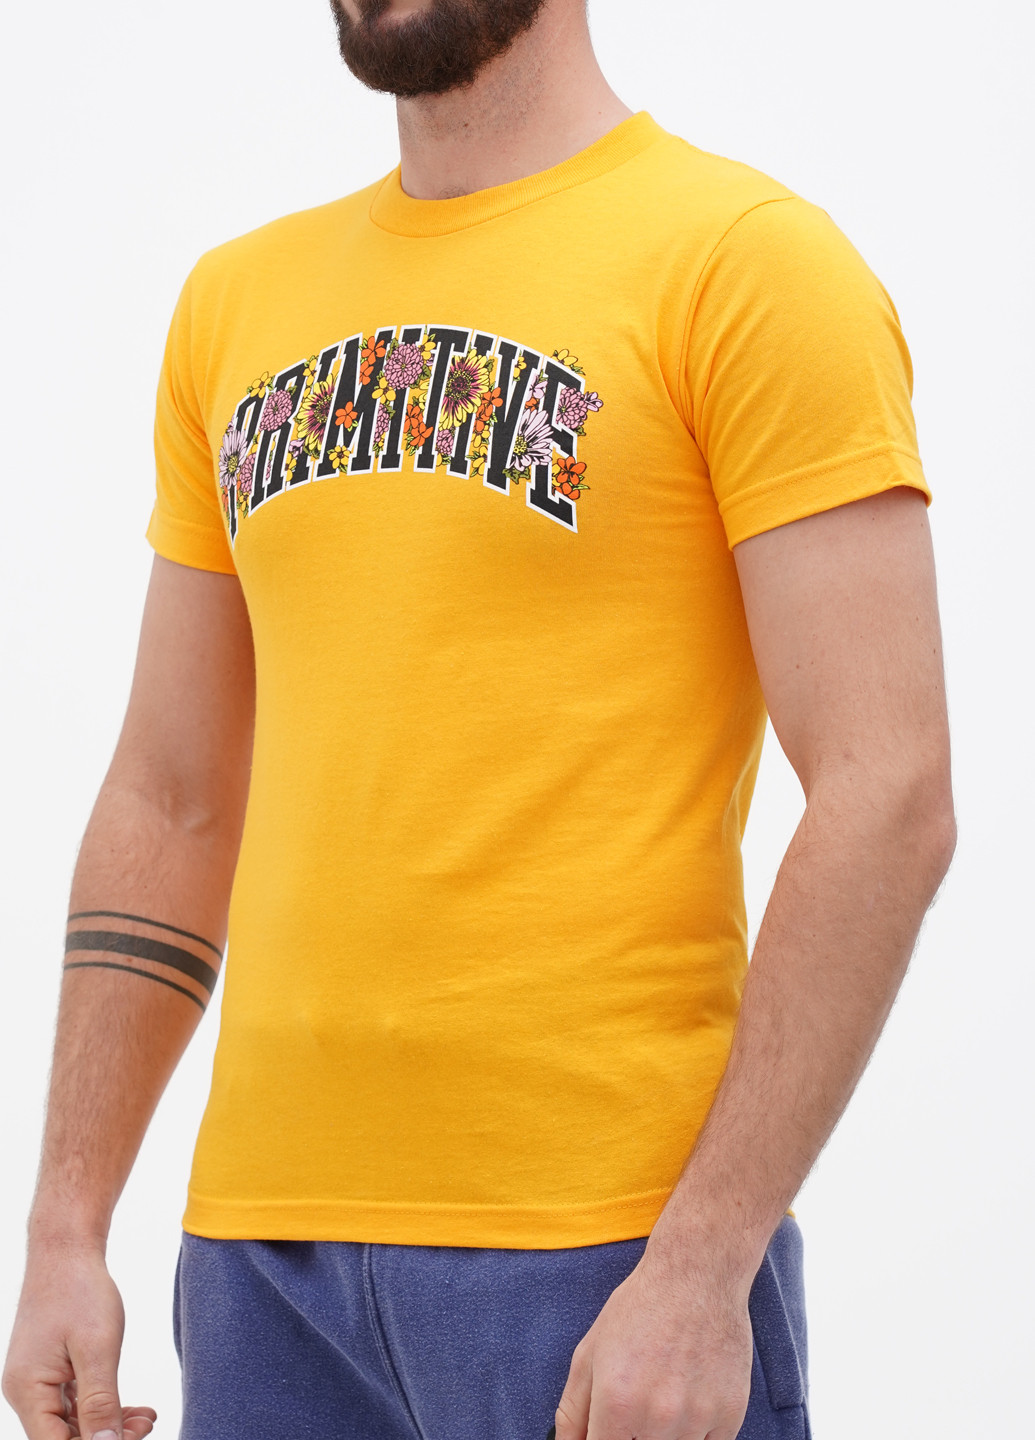 Помаранчева футболка Primitive